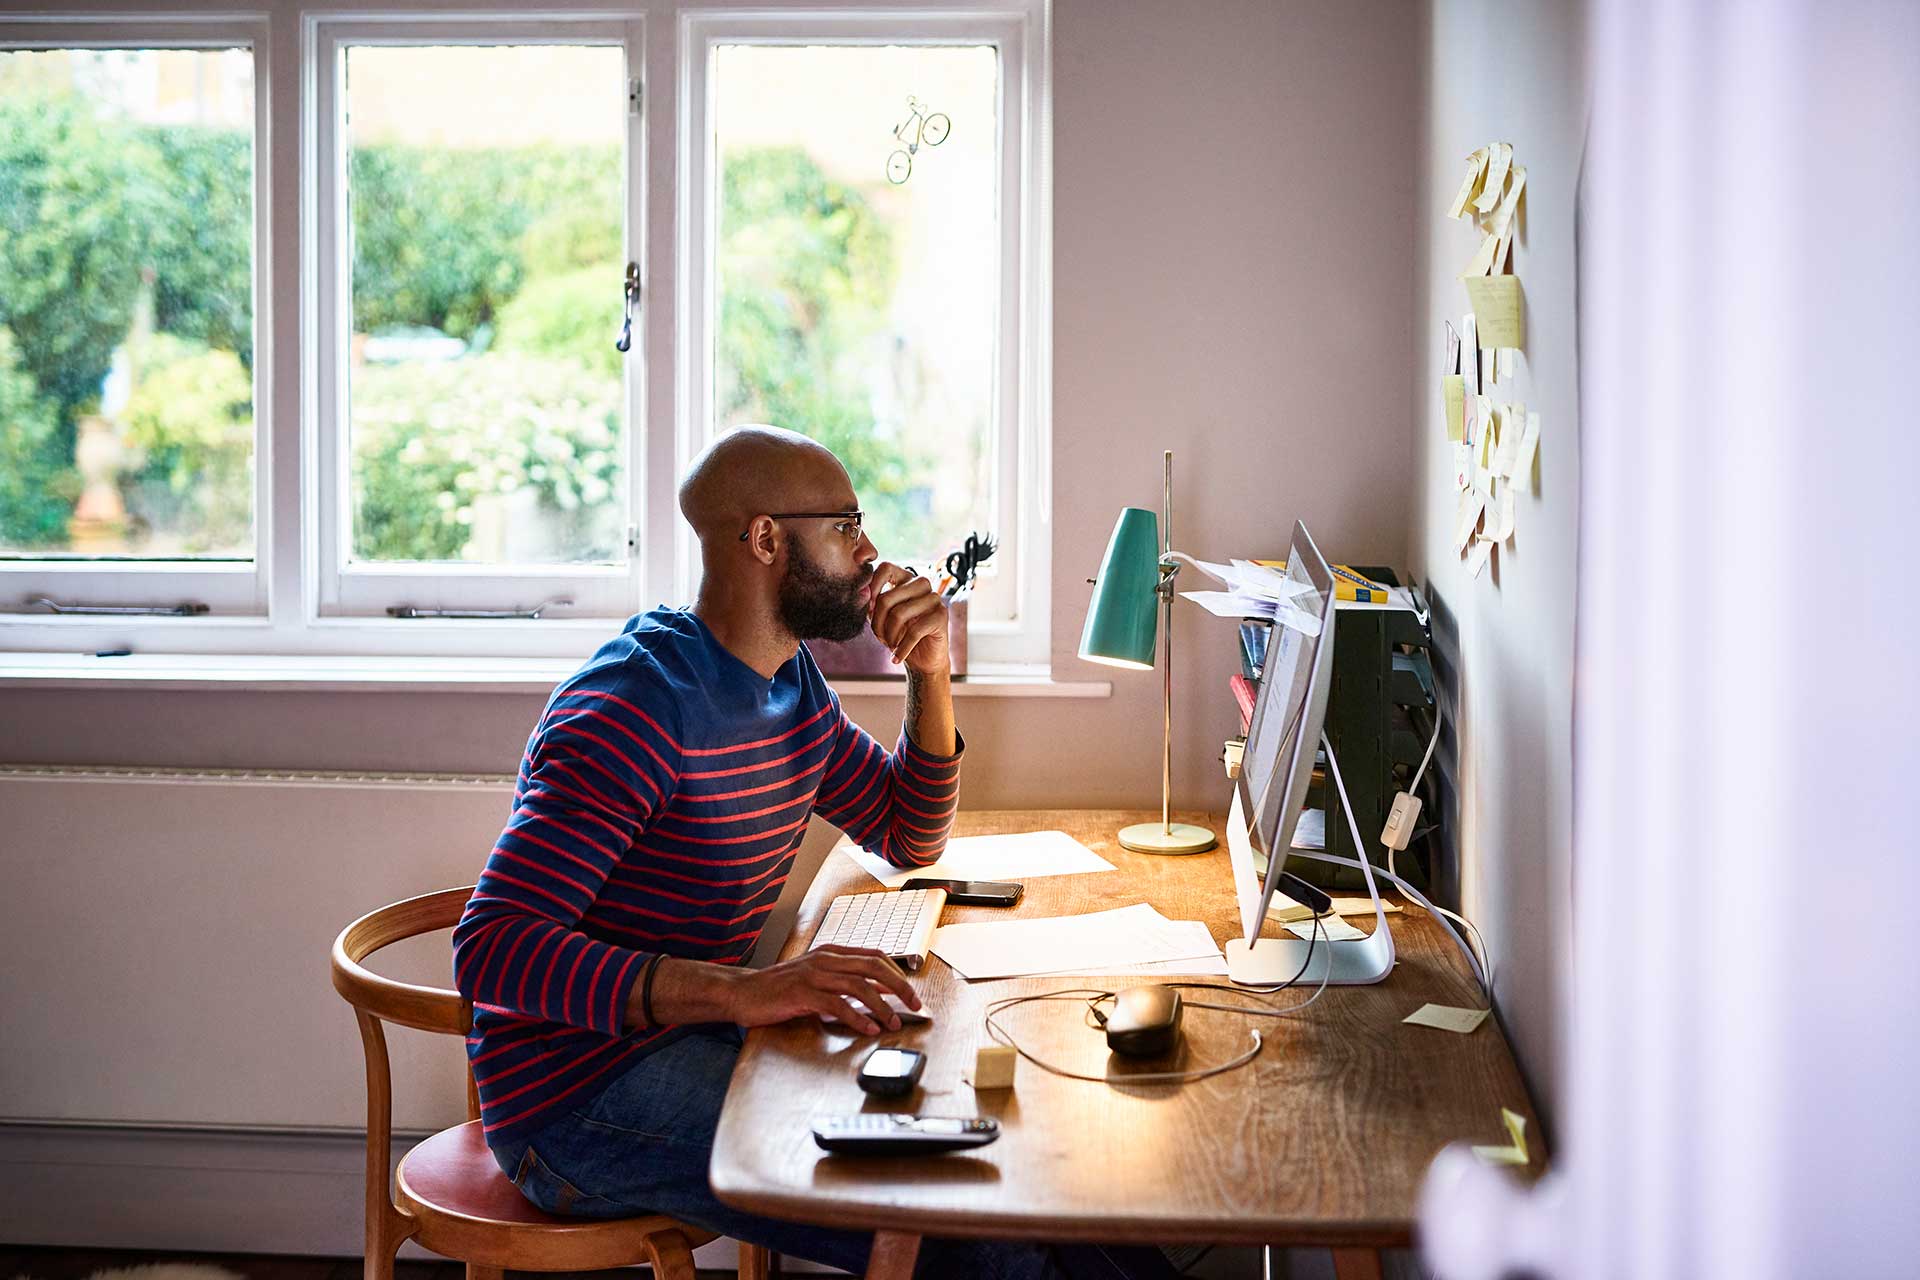 一個人坐在桌前，手放在滑鼠上並緊盯著電腦螢幕，想弄清楚為什麼不能編輯 PDF。